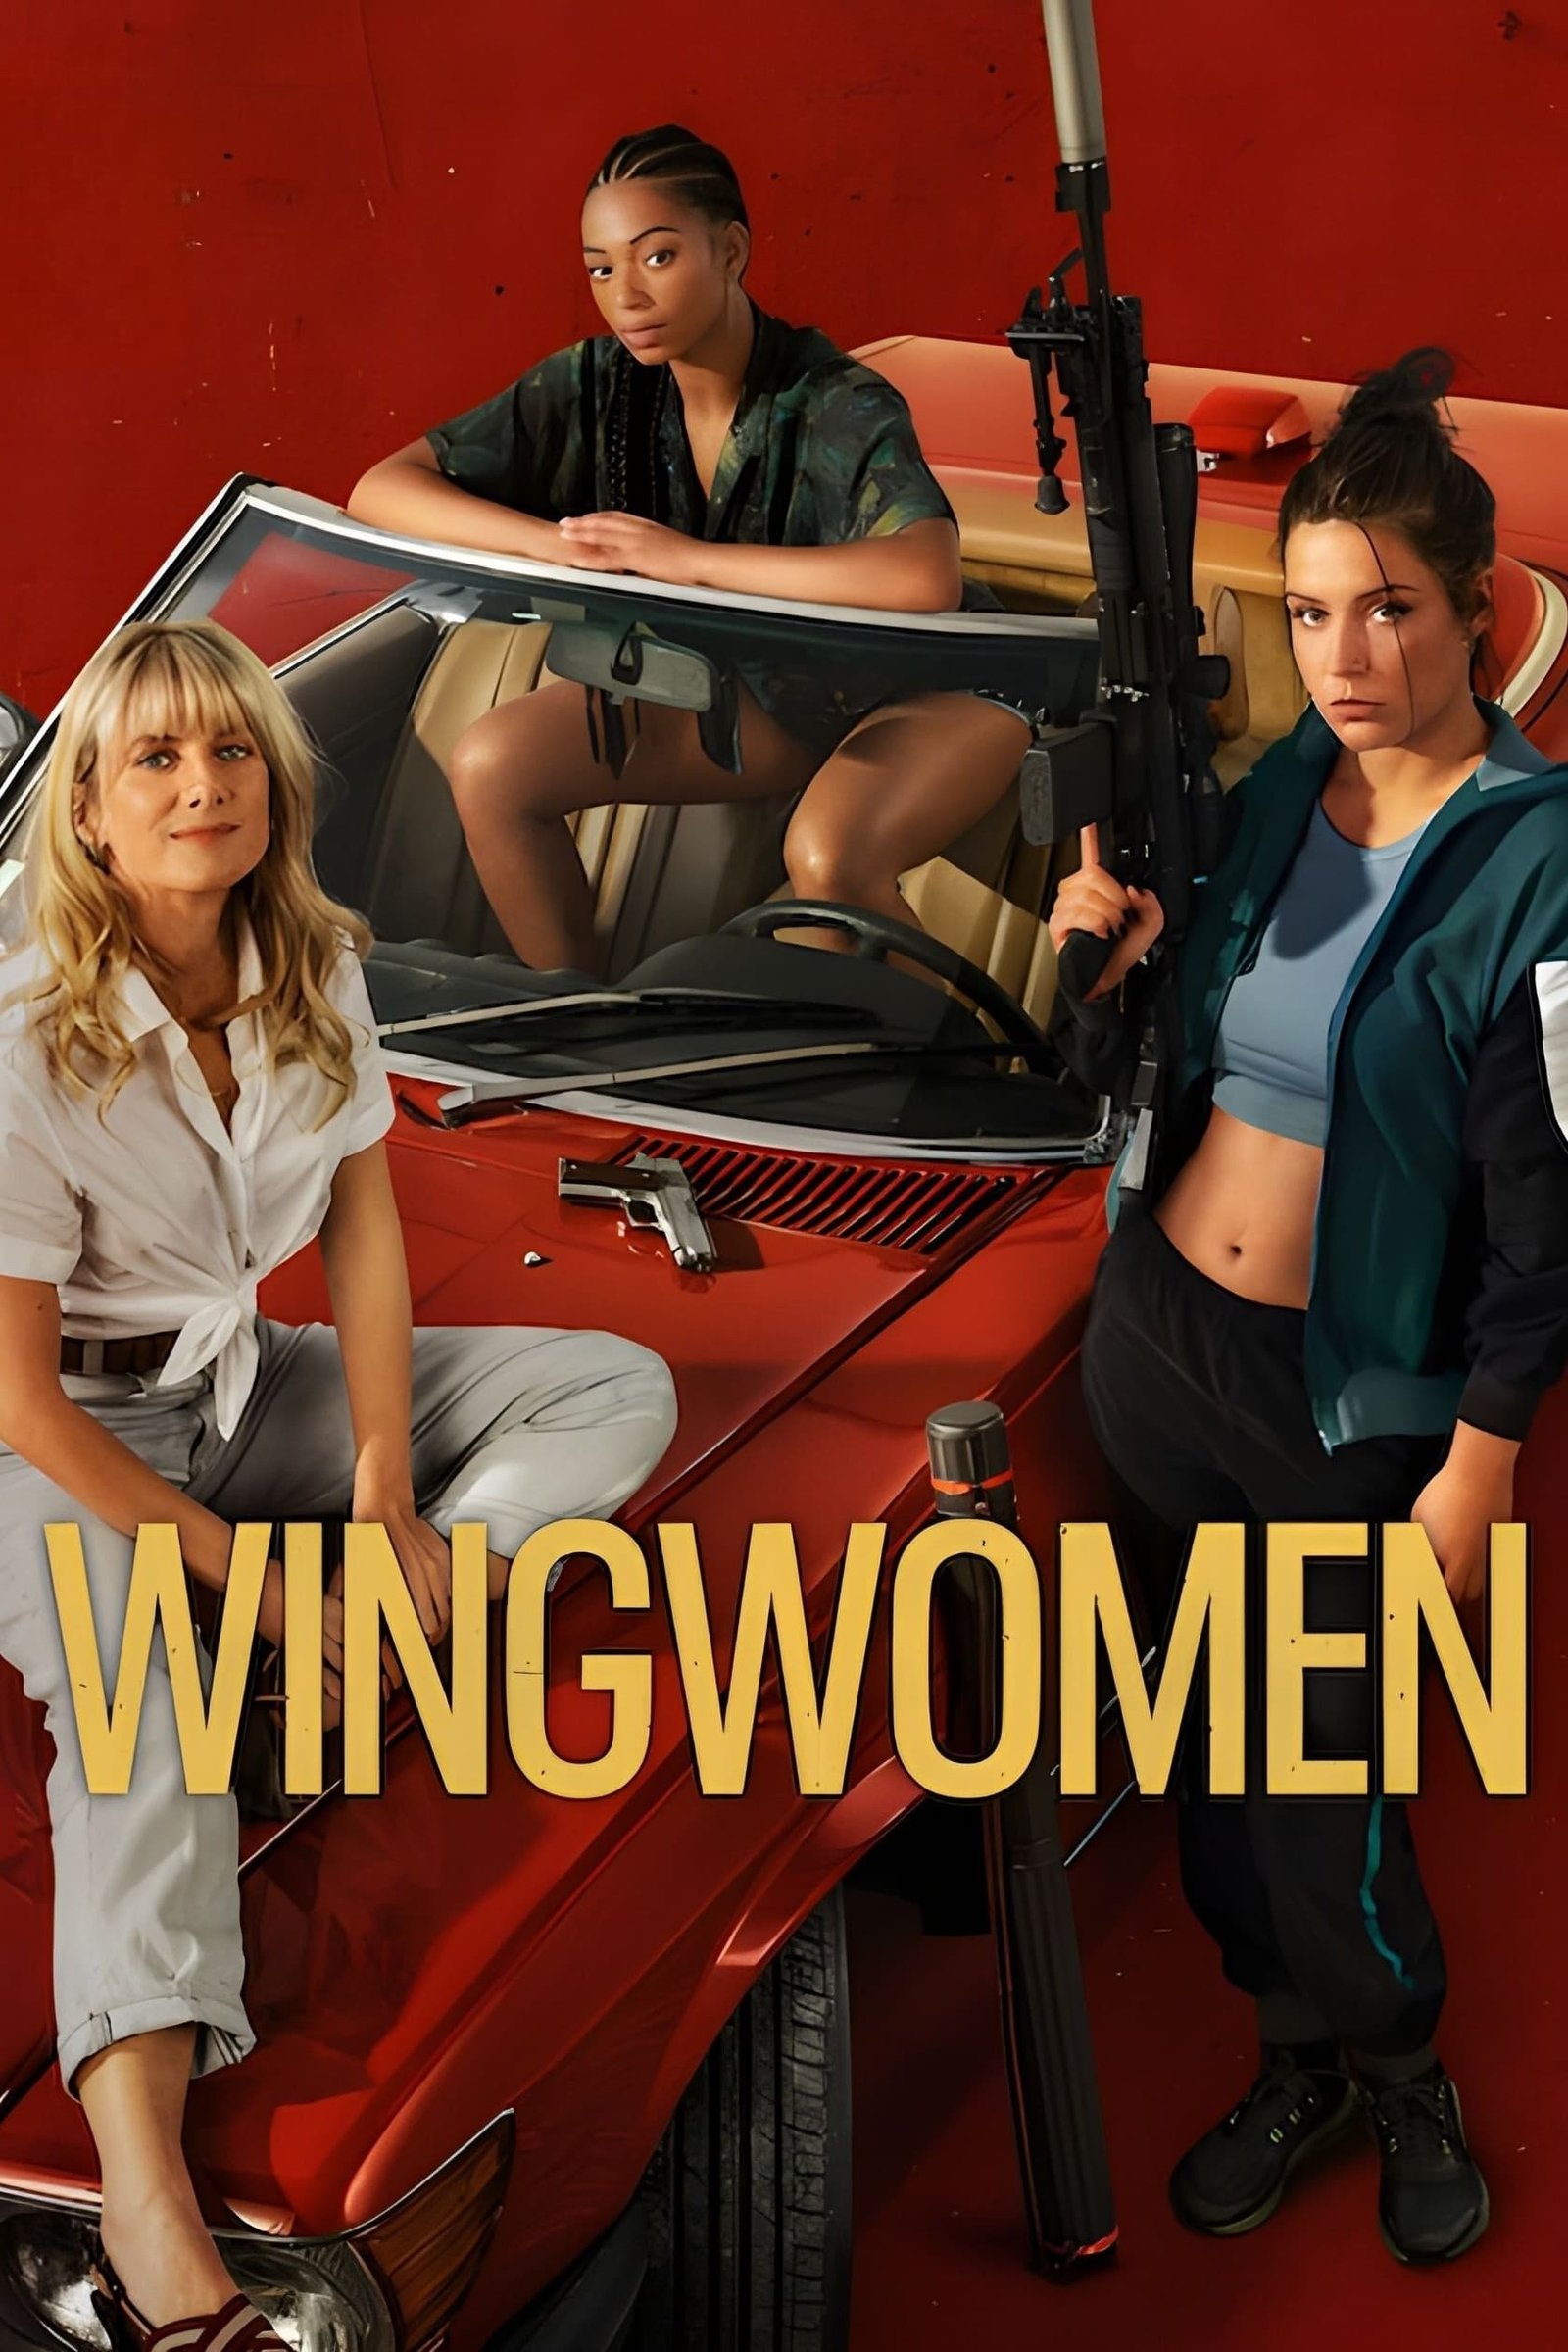 Wingwomen - VJ Junior